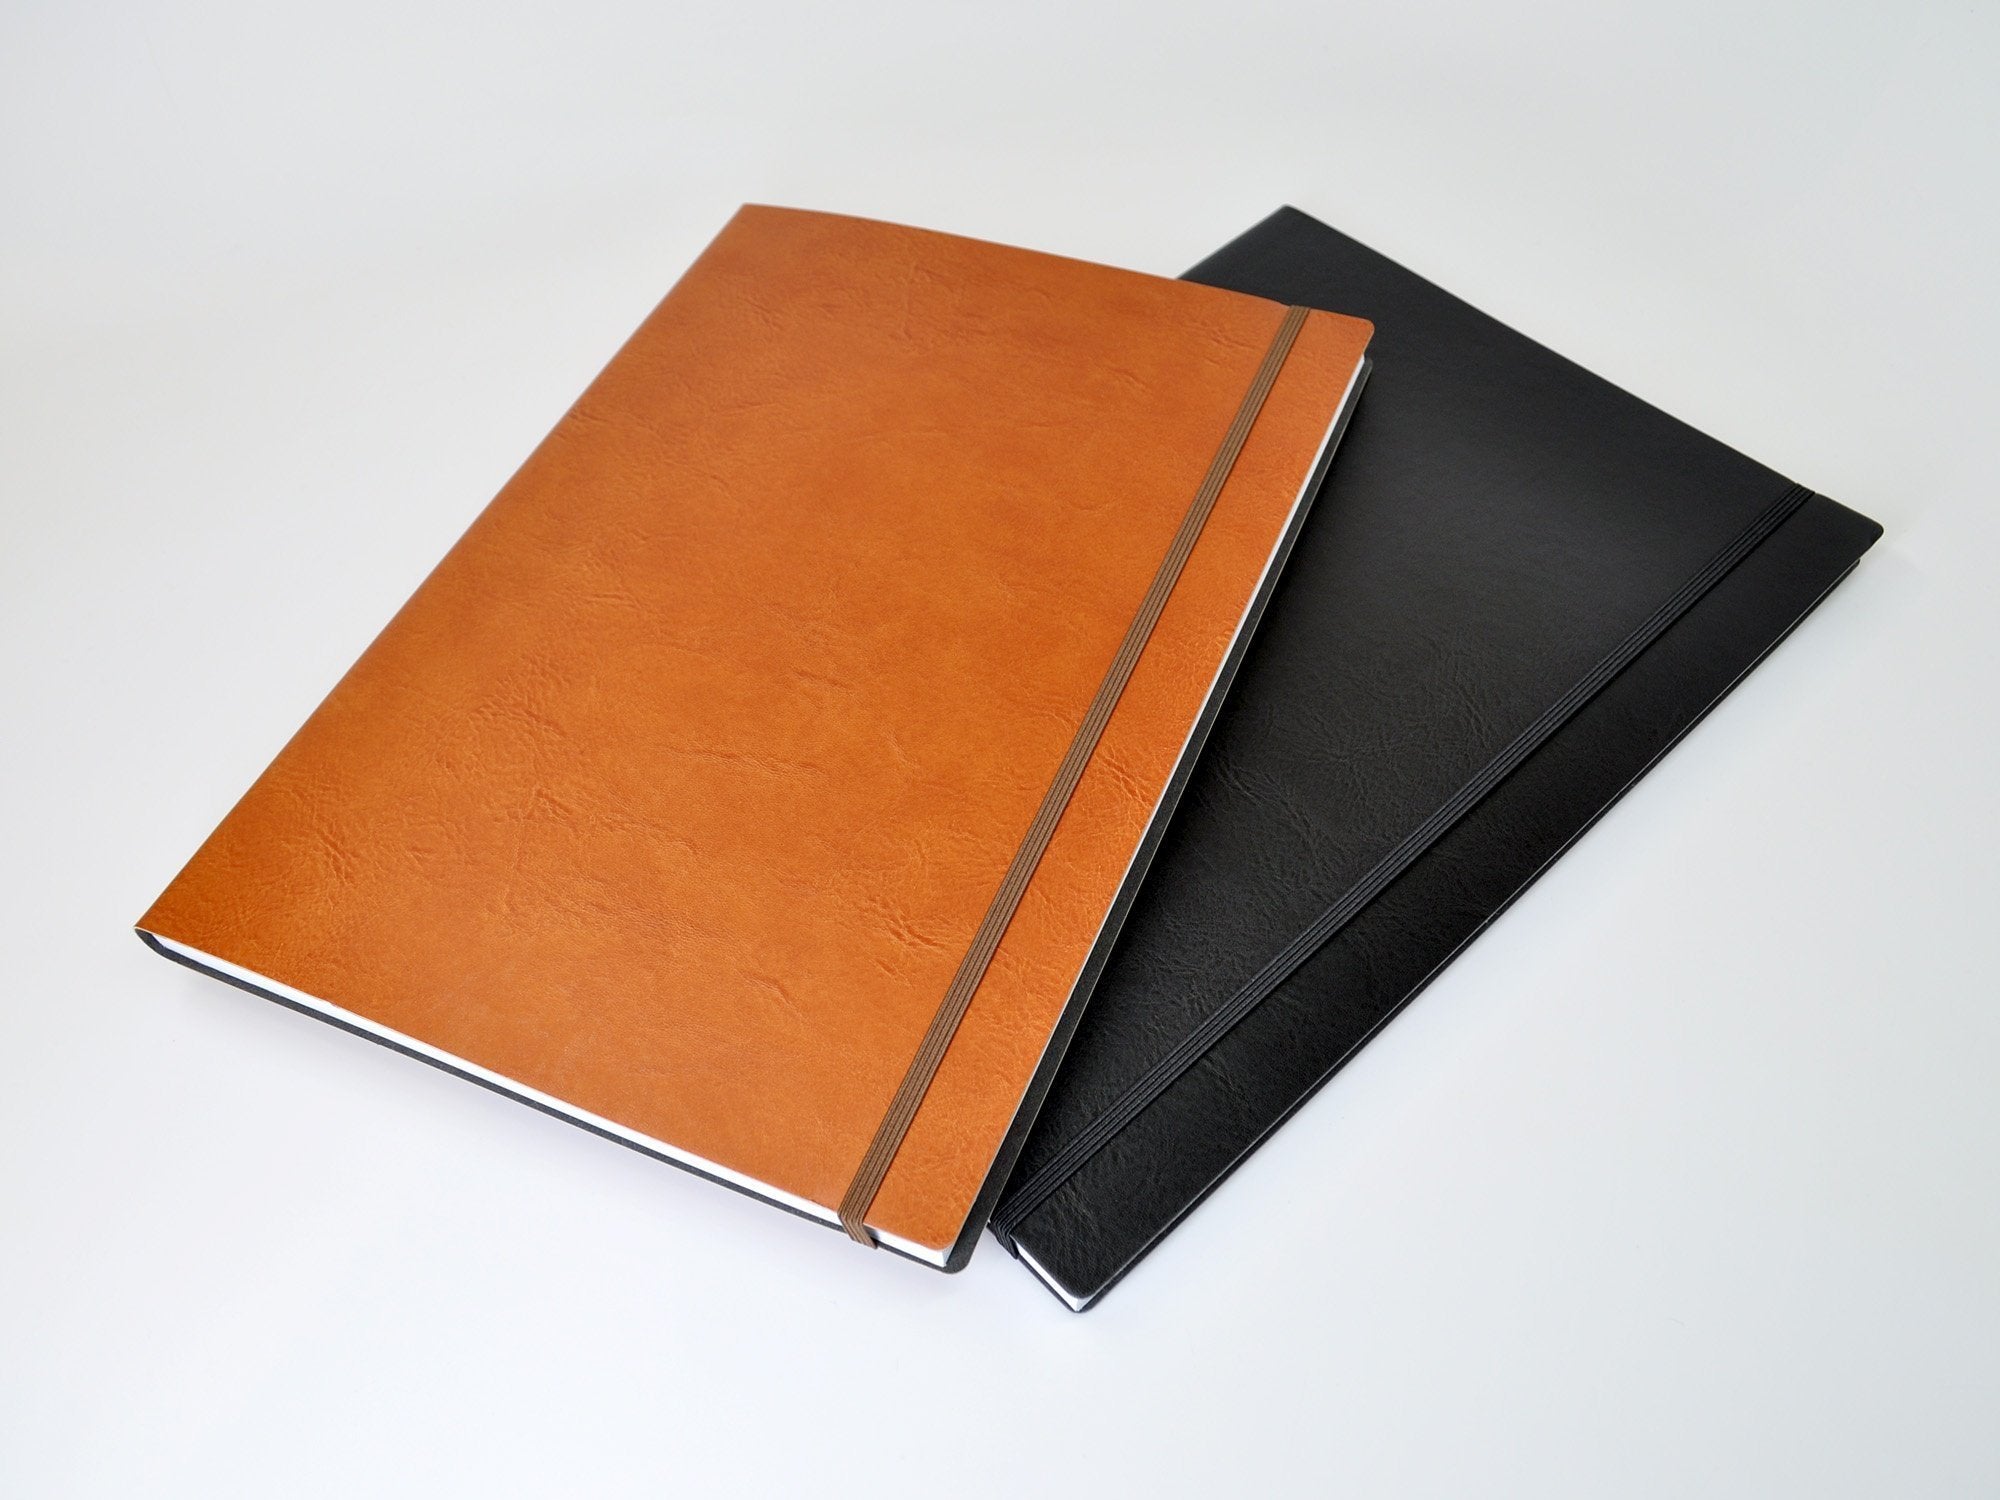 Leather Sketchbook Cover, A4 Sketchbook, A5 Sketchbook Cover, Personalized  Sketchbook Journal, Custom Sketchbook With Pocket 